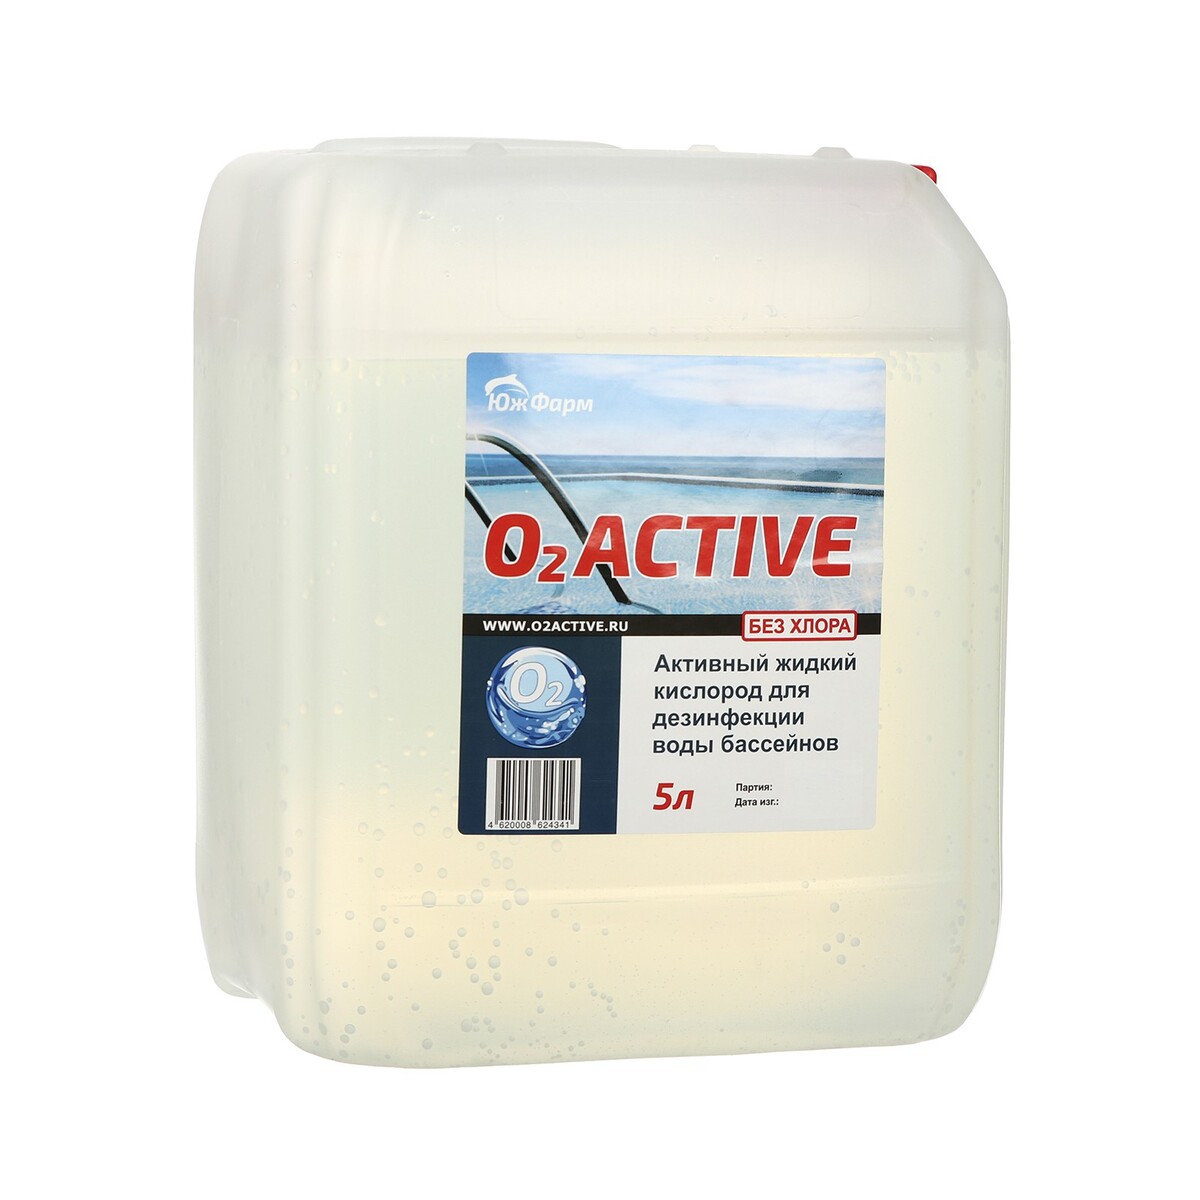 О2 active, средство для дезинфекции воды бассейнов, 5 л средство кристалпул oxi для воды в бассейнах 1 5 кг